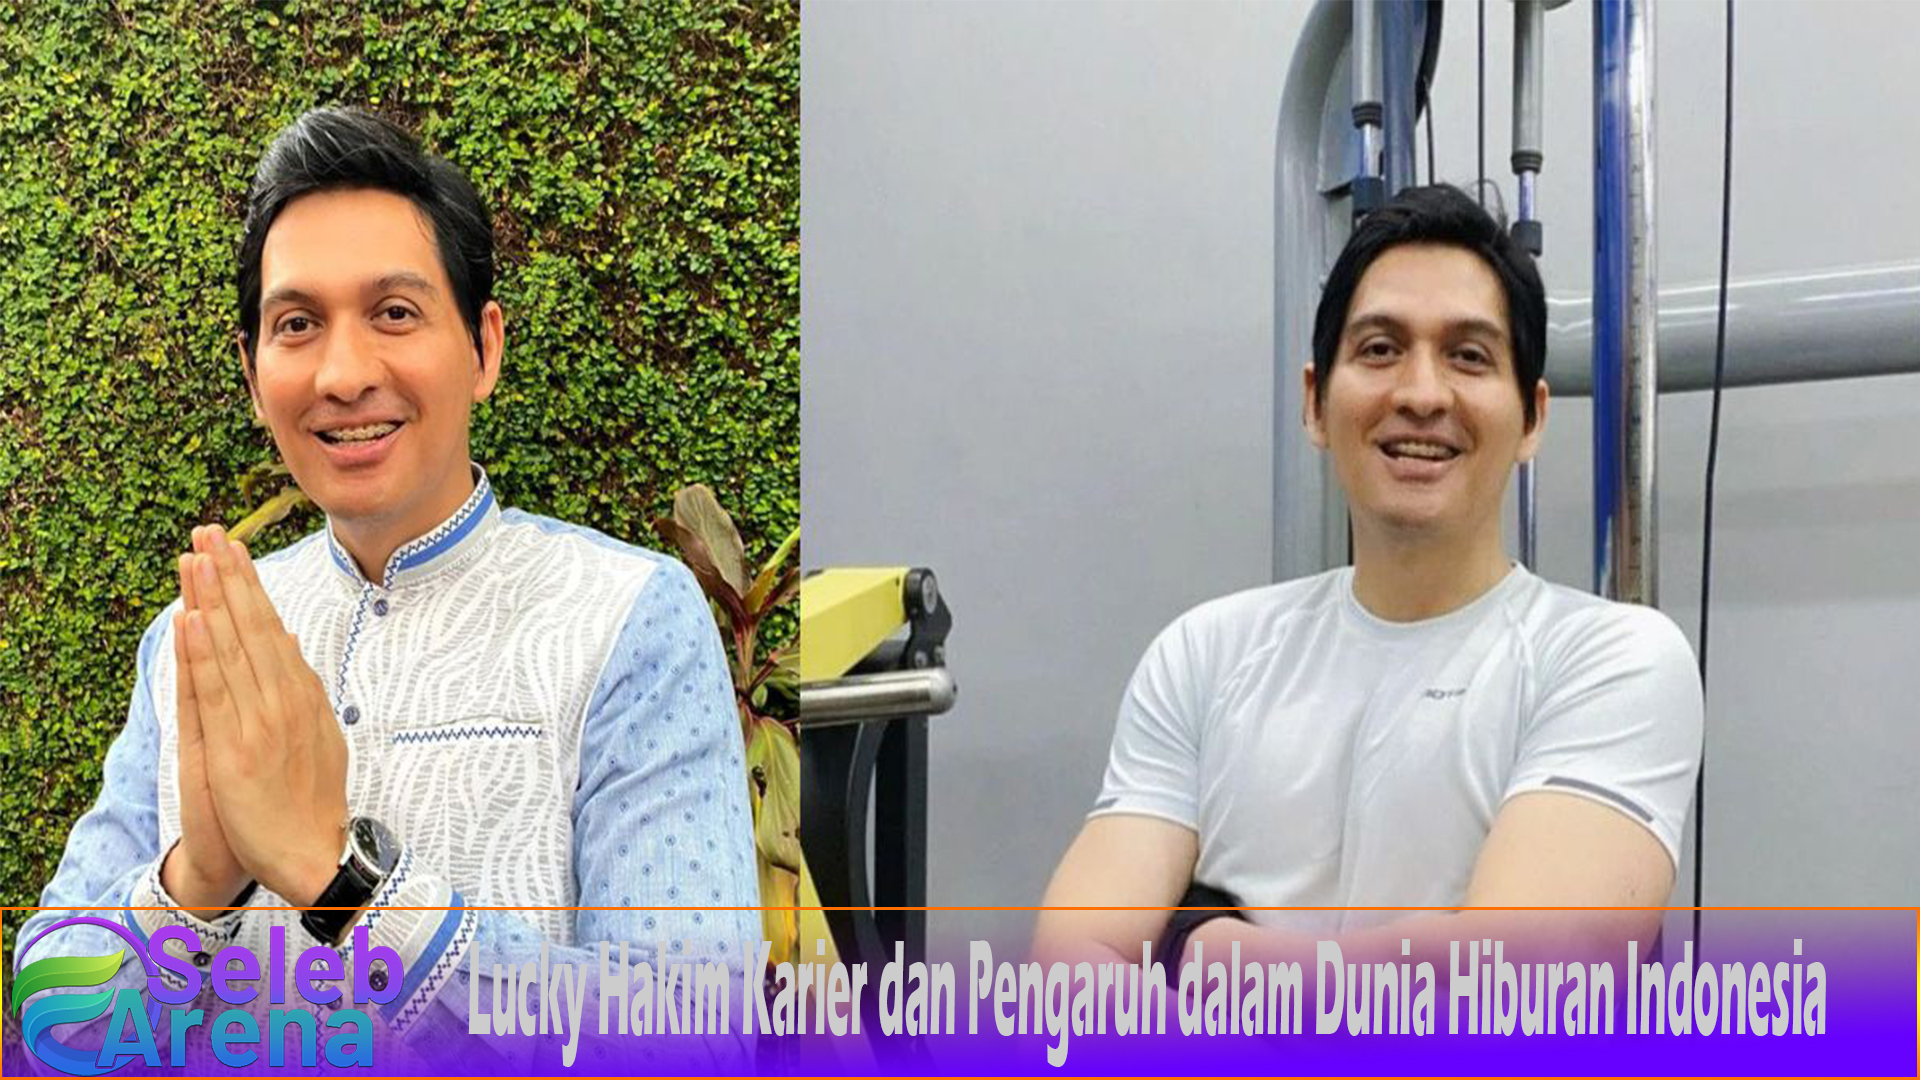 Lucky Hakim Karier dan Pengaruh dalam Dunia Hiburan Indonesia